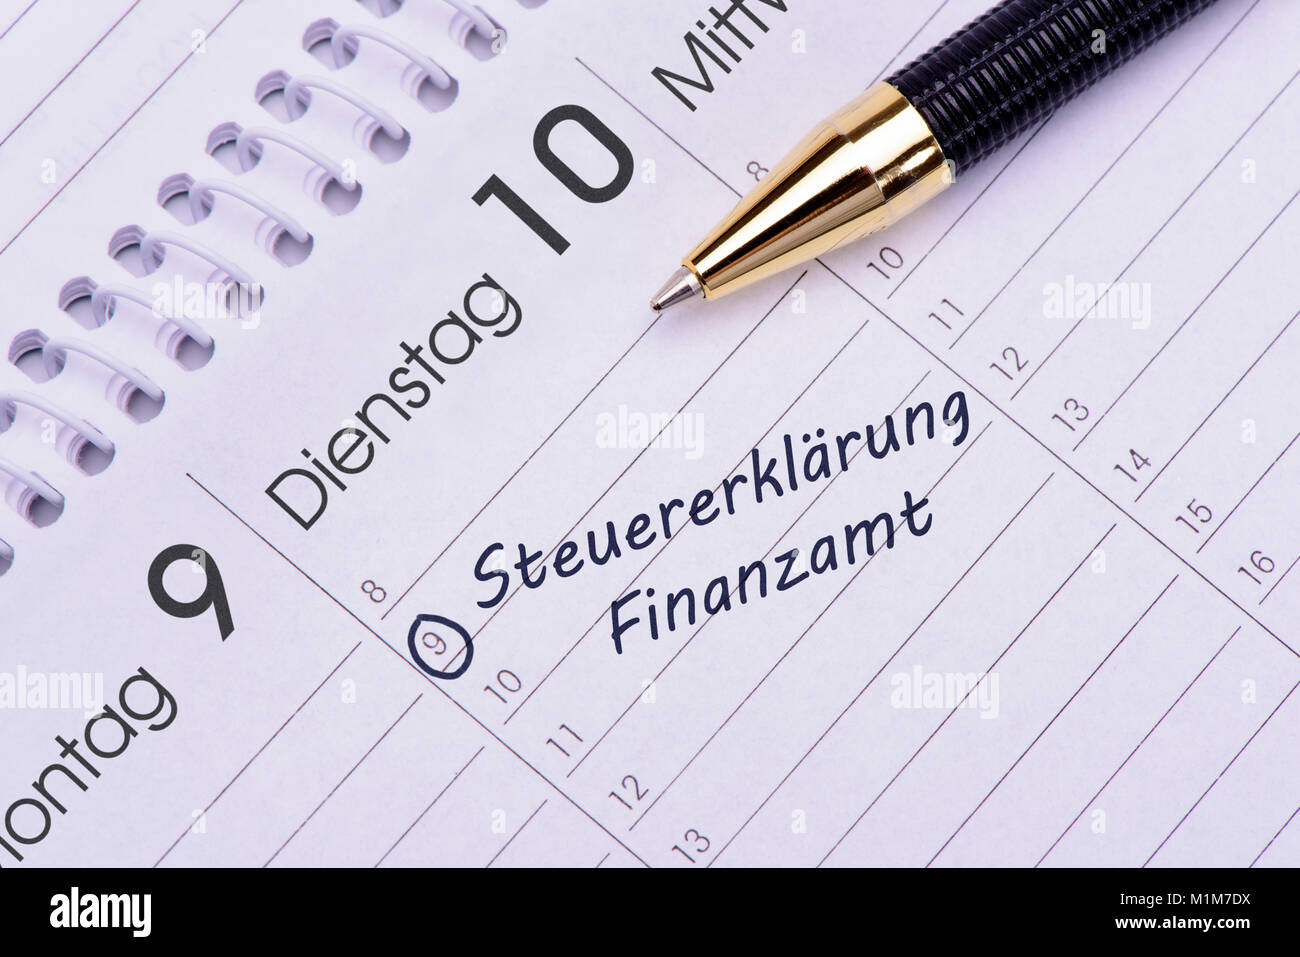 Steuererklärung für Finanzamt  Termin im Kalender Stock Photo